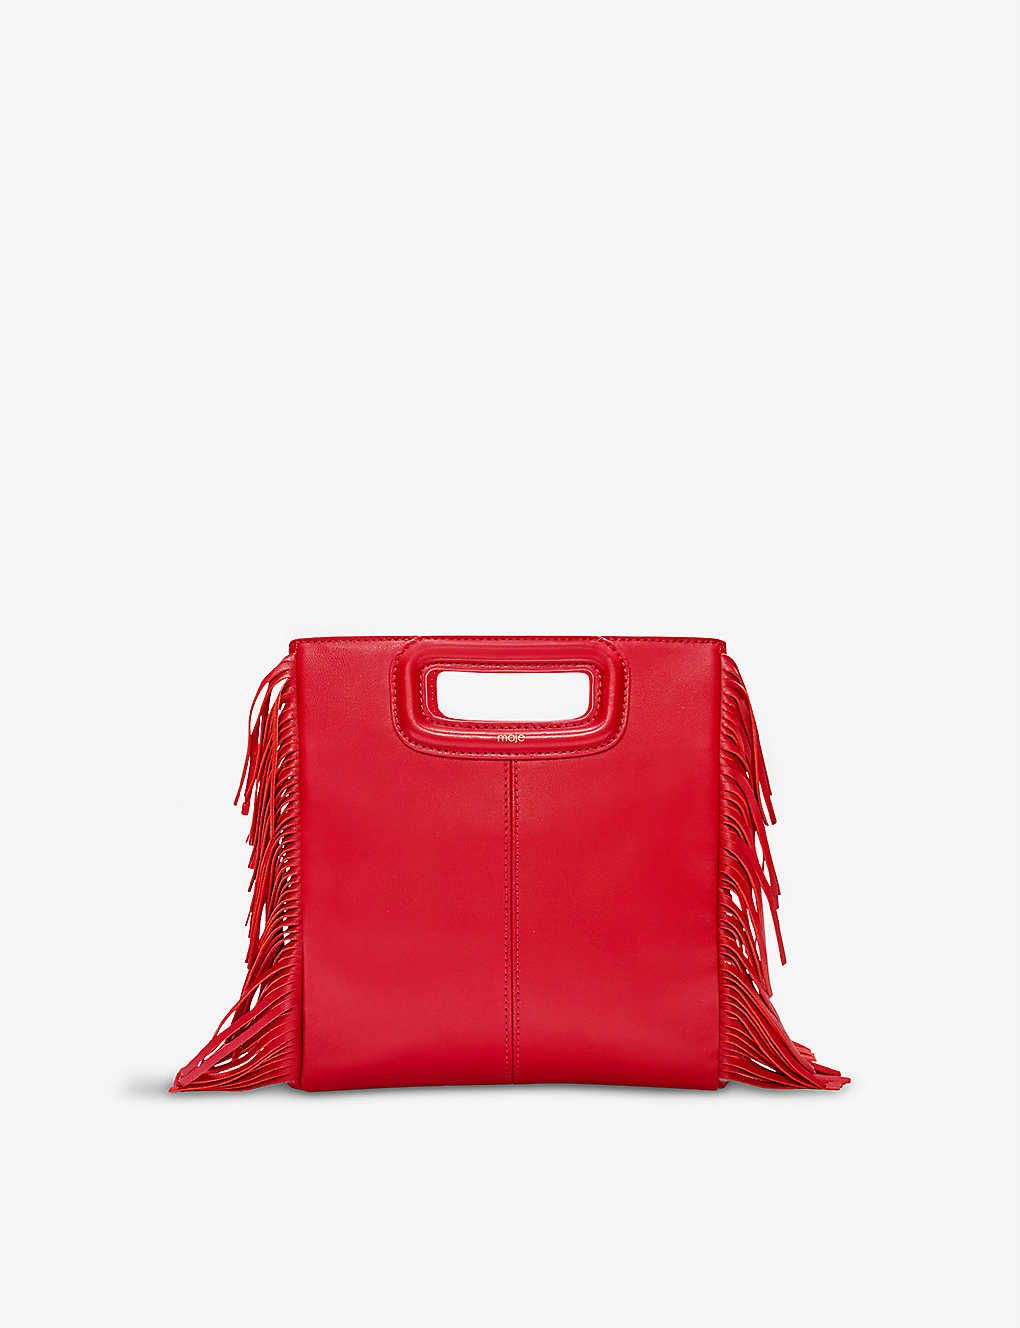 M leather shoulder bag | Selfridges